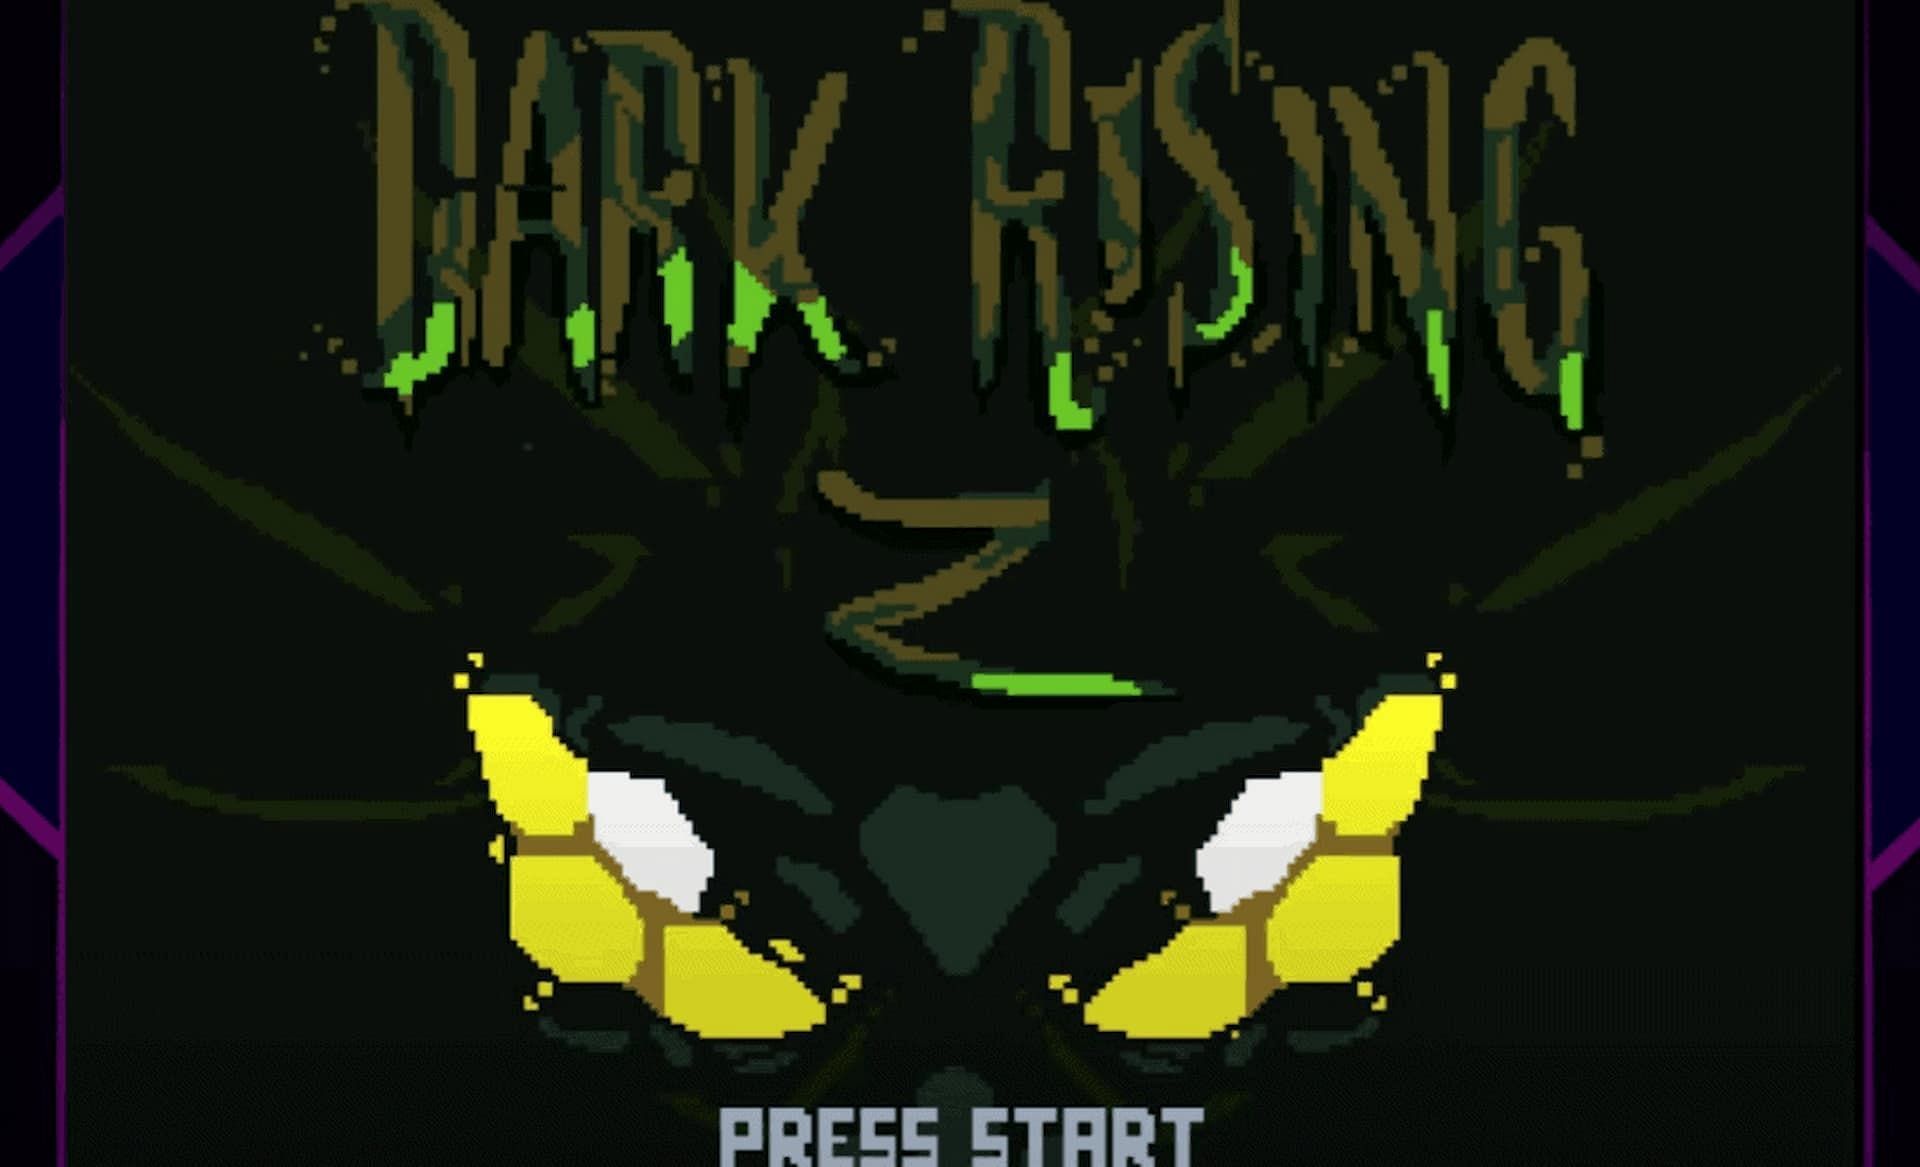 Schermata del titolo di Dark Rising (Immagine tramite DarkRisingGirl)